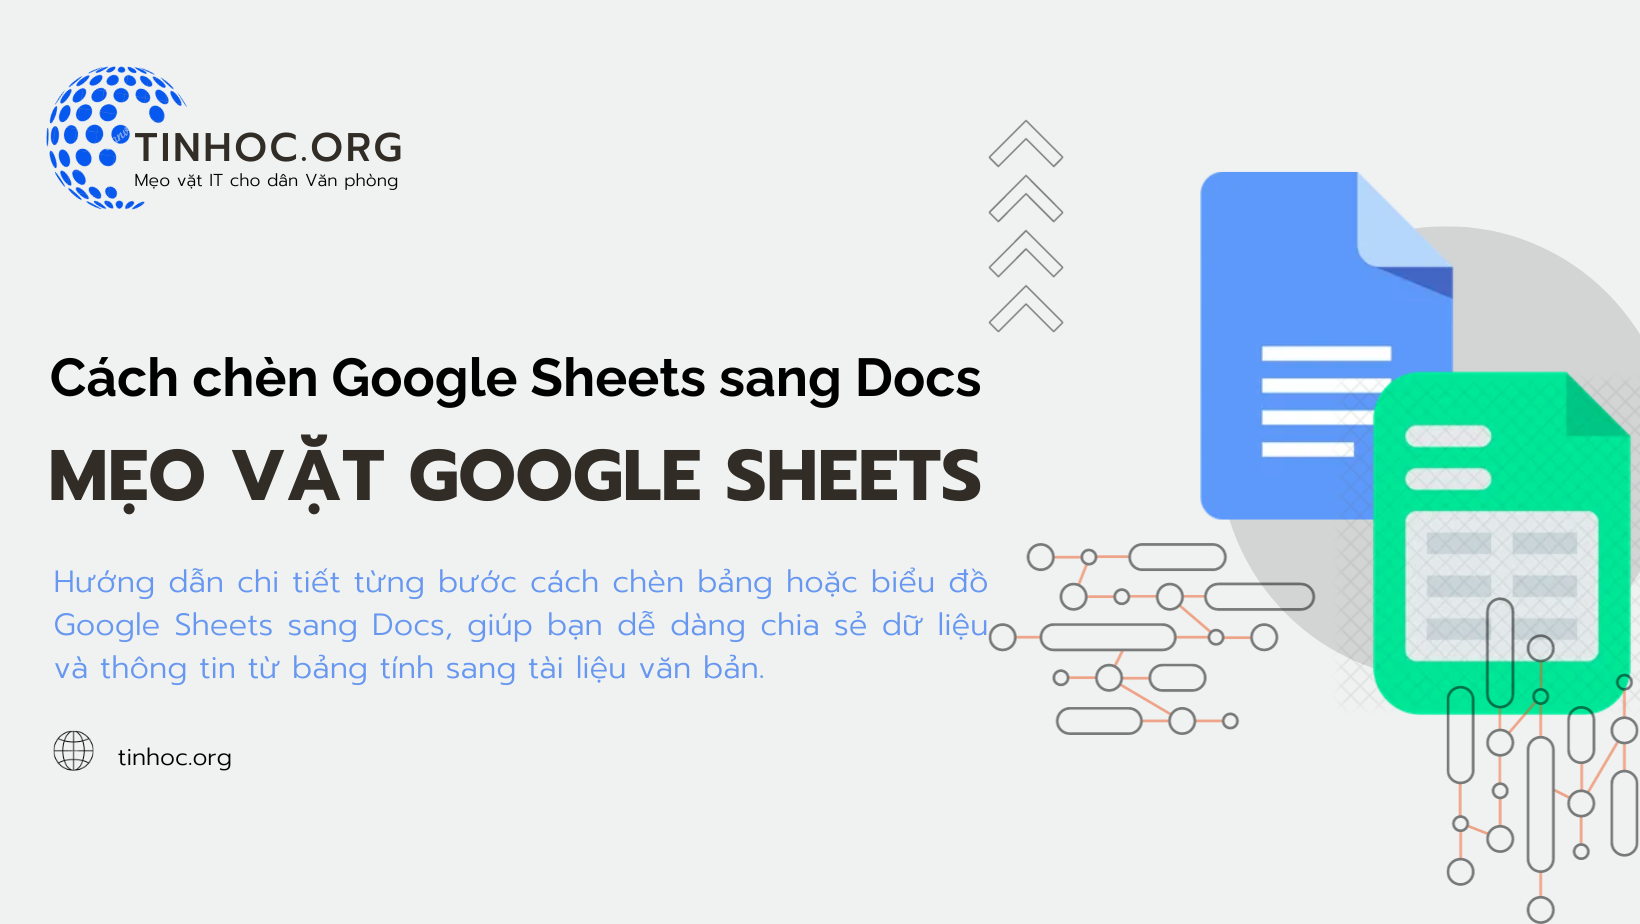 Cách chèn Google Sheets sang Docs